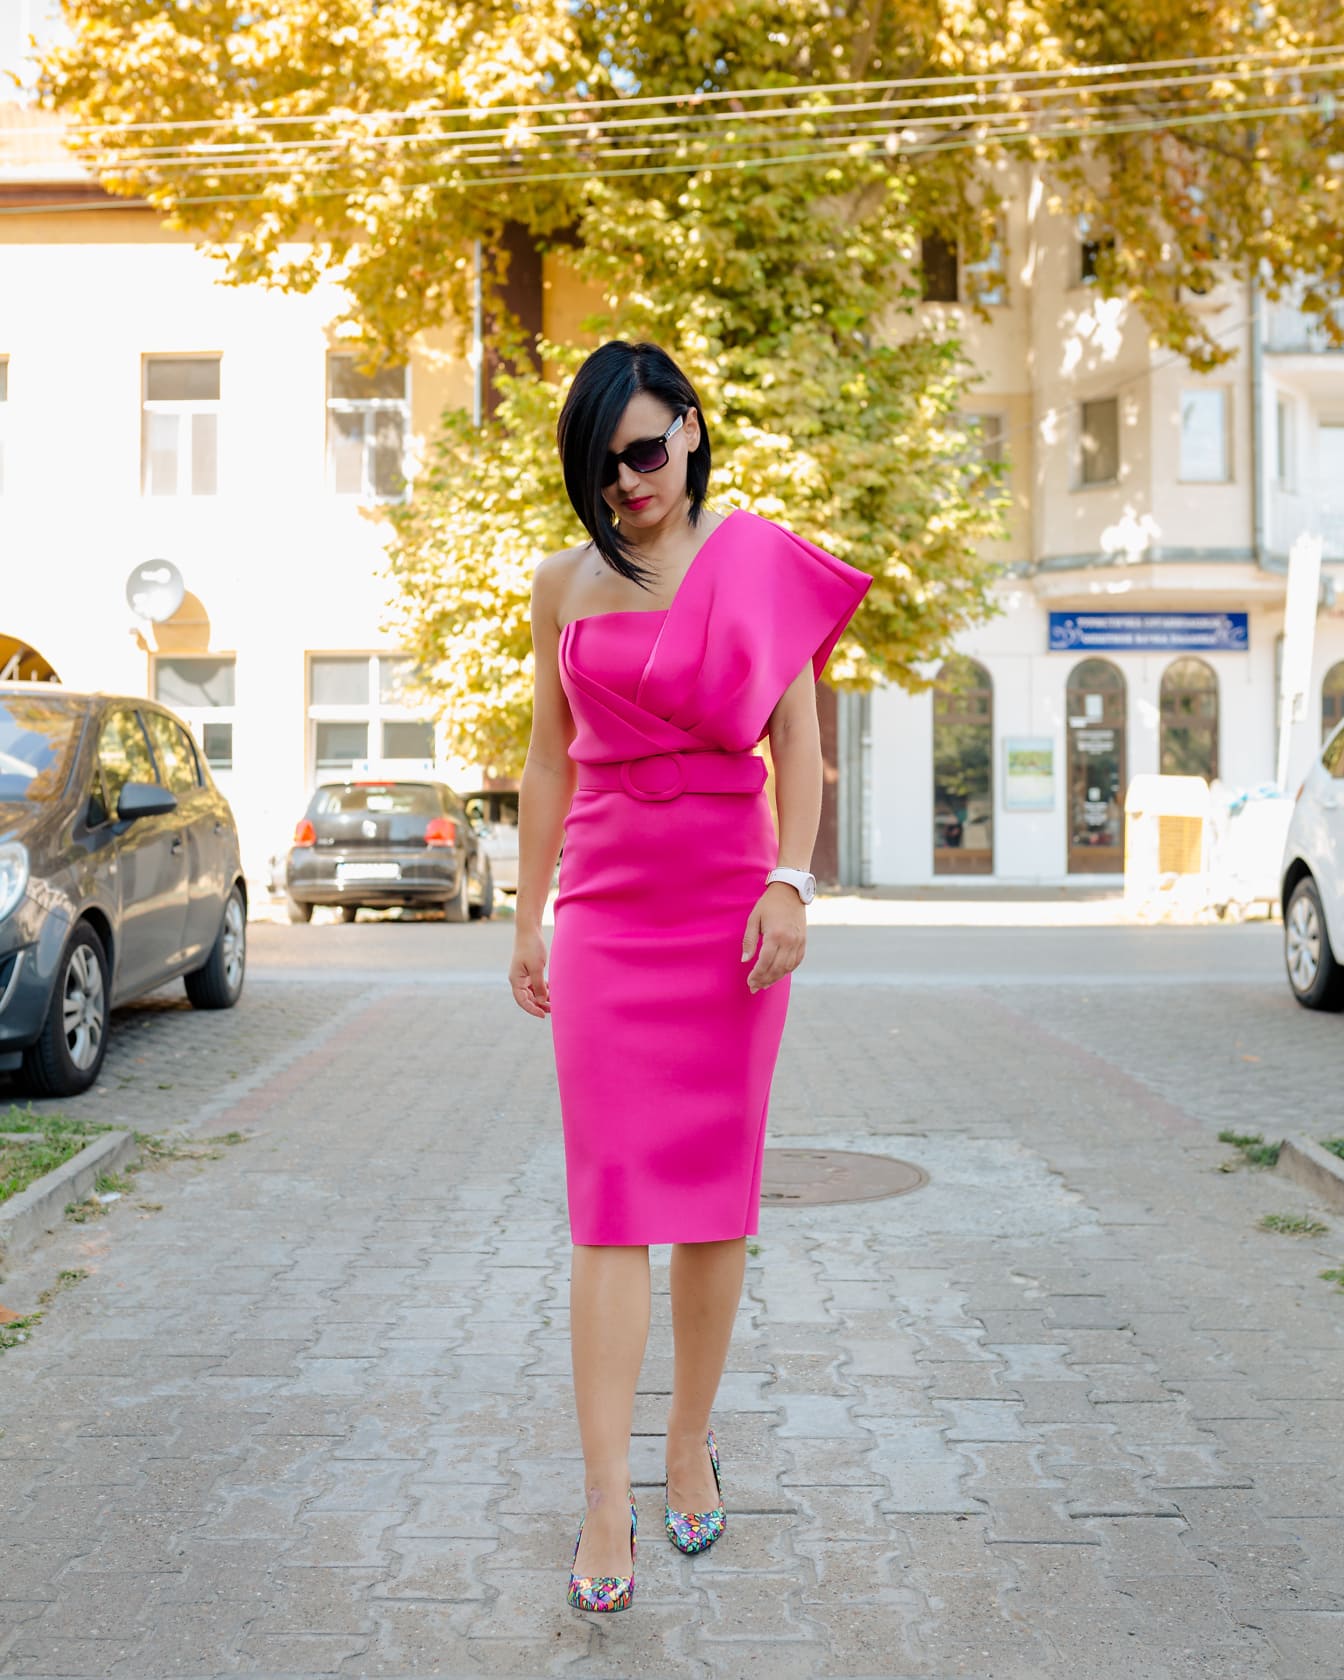 Femeie elegantă într-o rochie roz la modă mergând pe o stradă